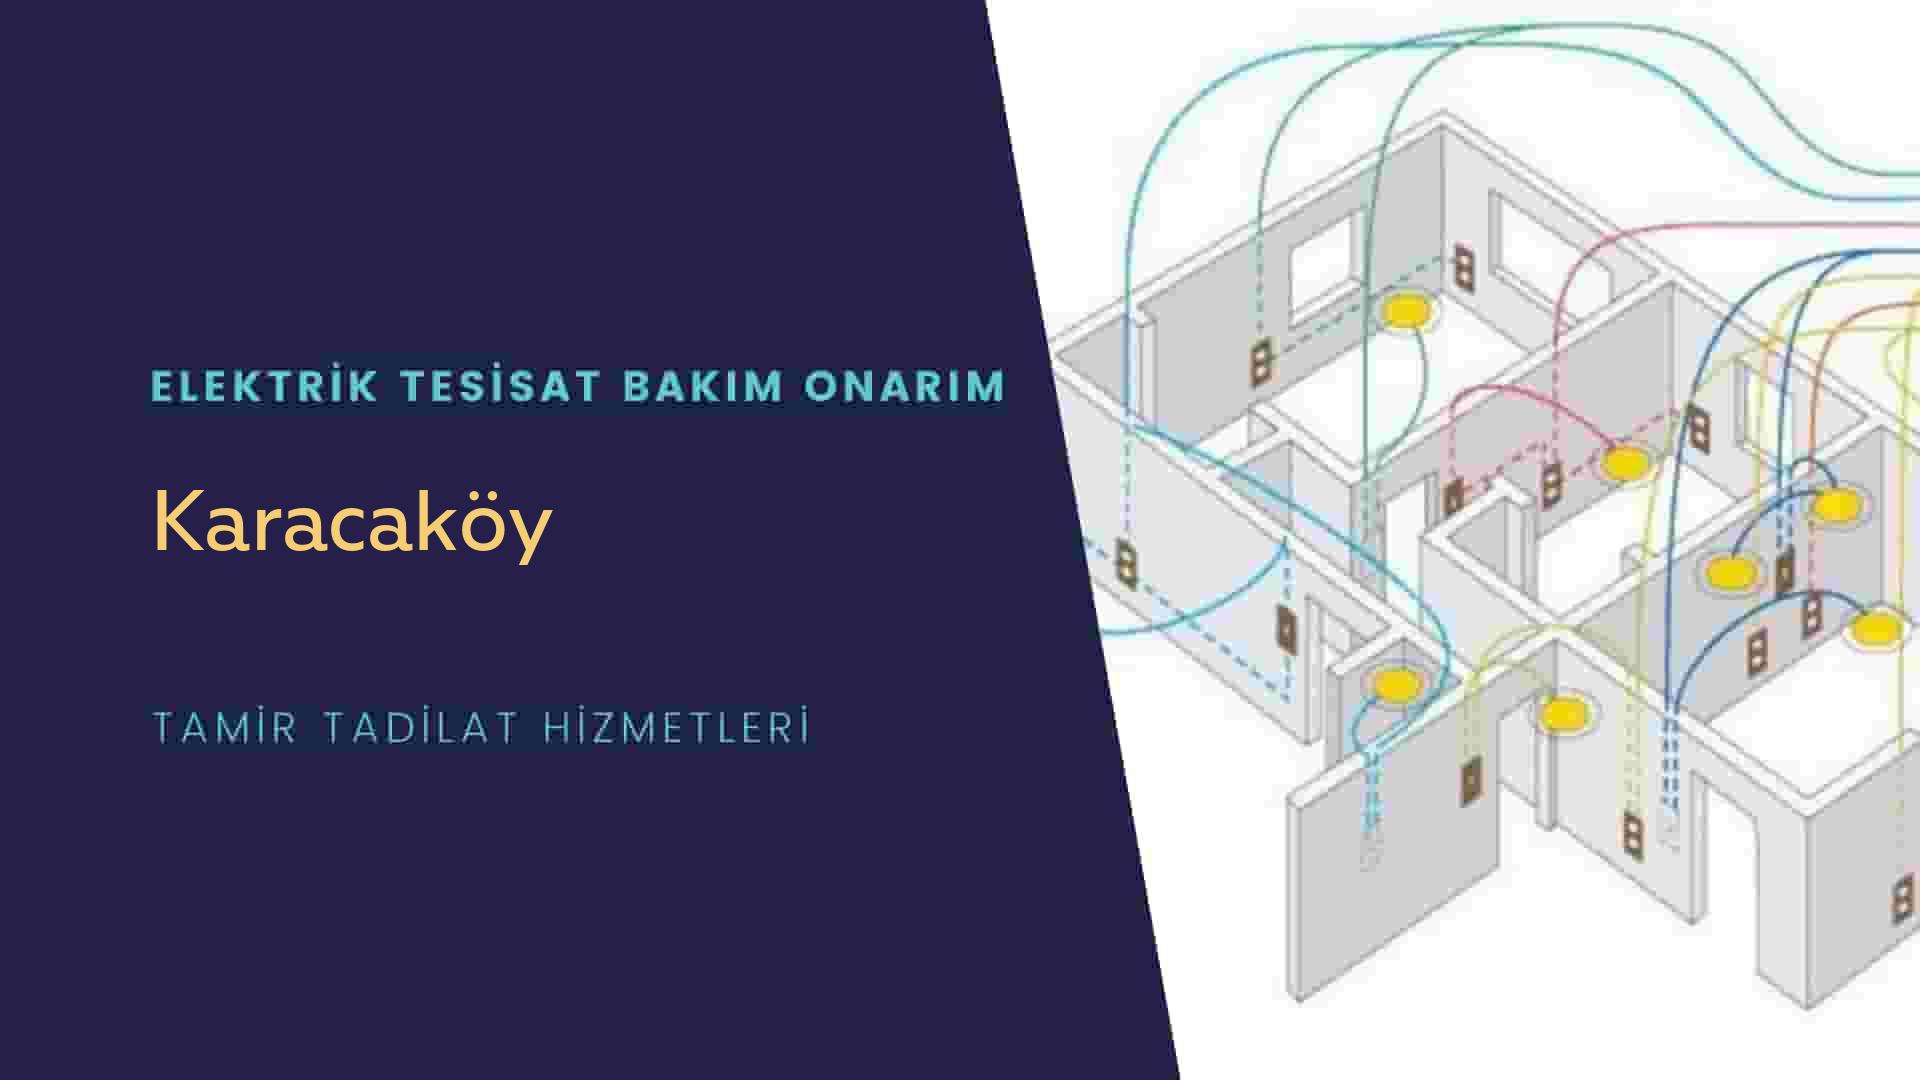 Karacaköy'de elektrik tesisatı ustalarımı arıyorsunuz doğru adrestenizi Karacaköy elektrik tesisatı ustalarımız 7/24 sizlere hizmet vermekten mutluluk duyar.